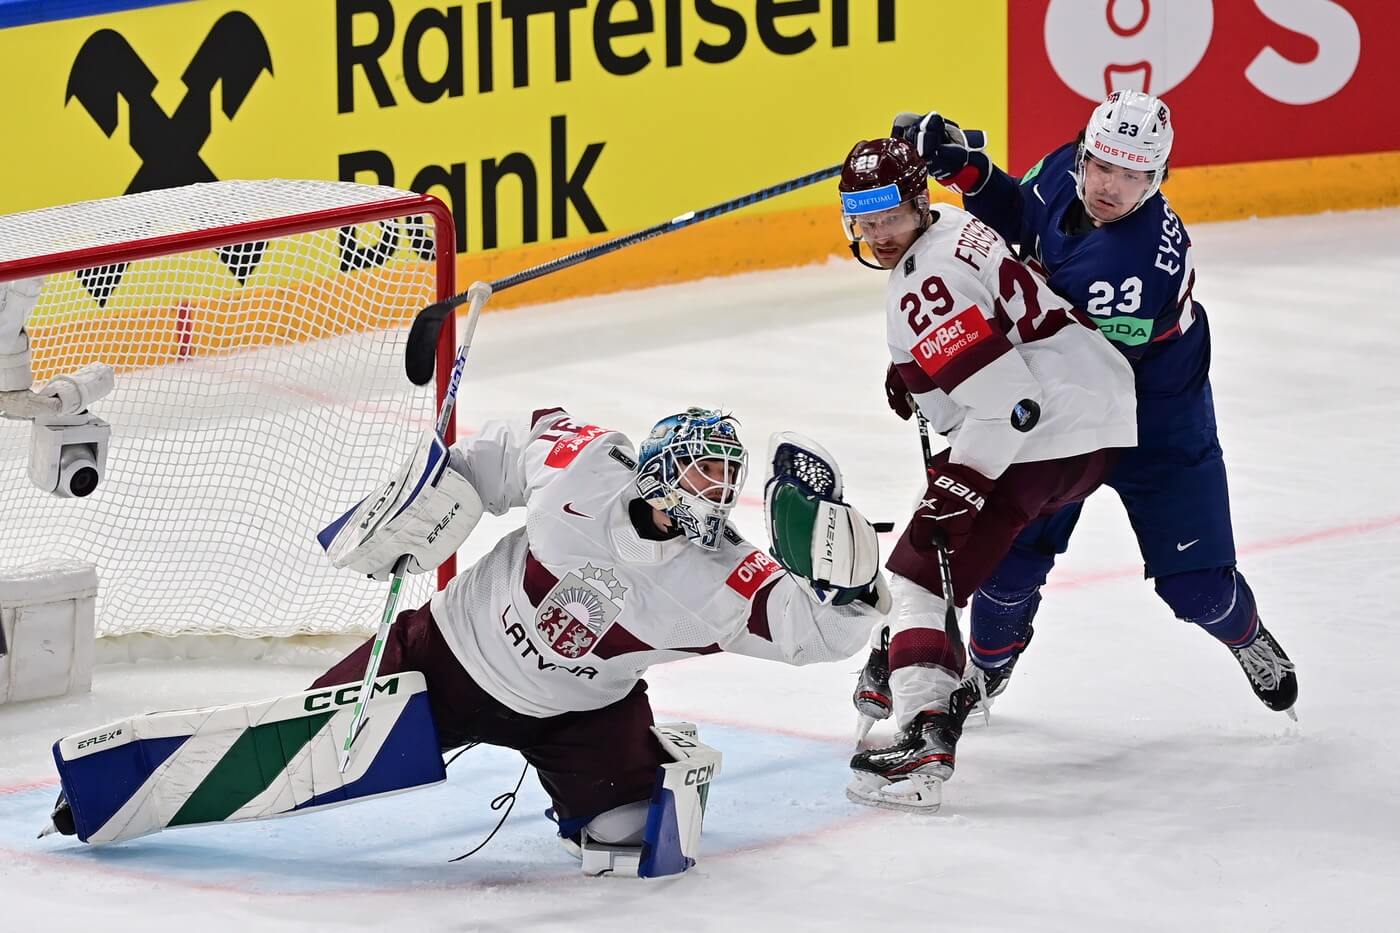 Zápas Lotyšsko vs. USA, MS v hokeji, momentka ze šampionátu v roce 2023, kdy se tyto celky střetly v souboji o 3. místo